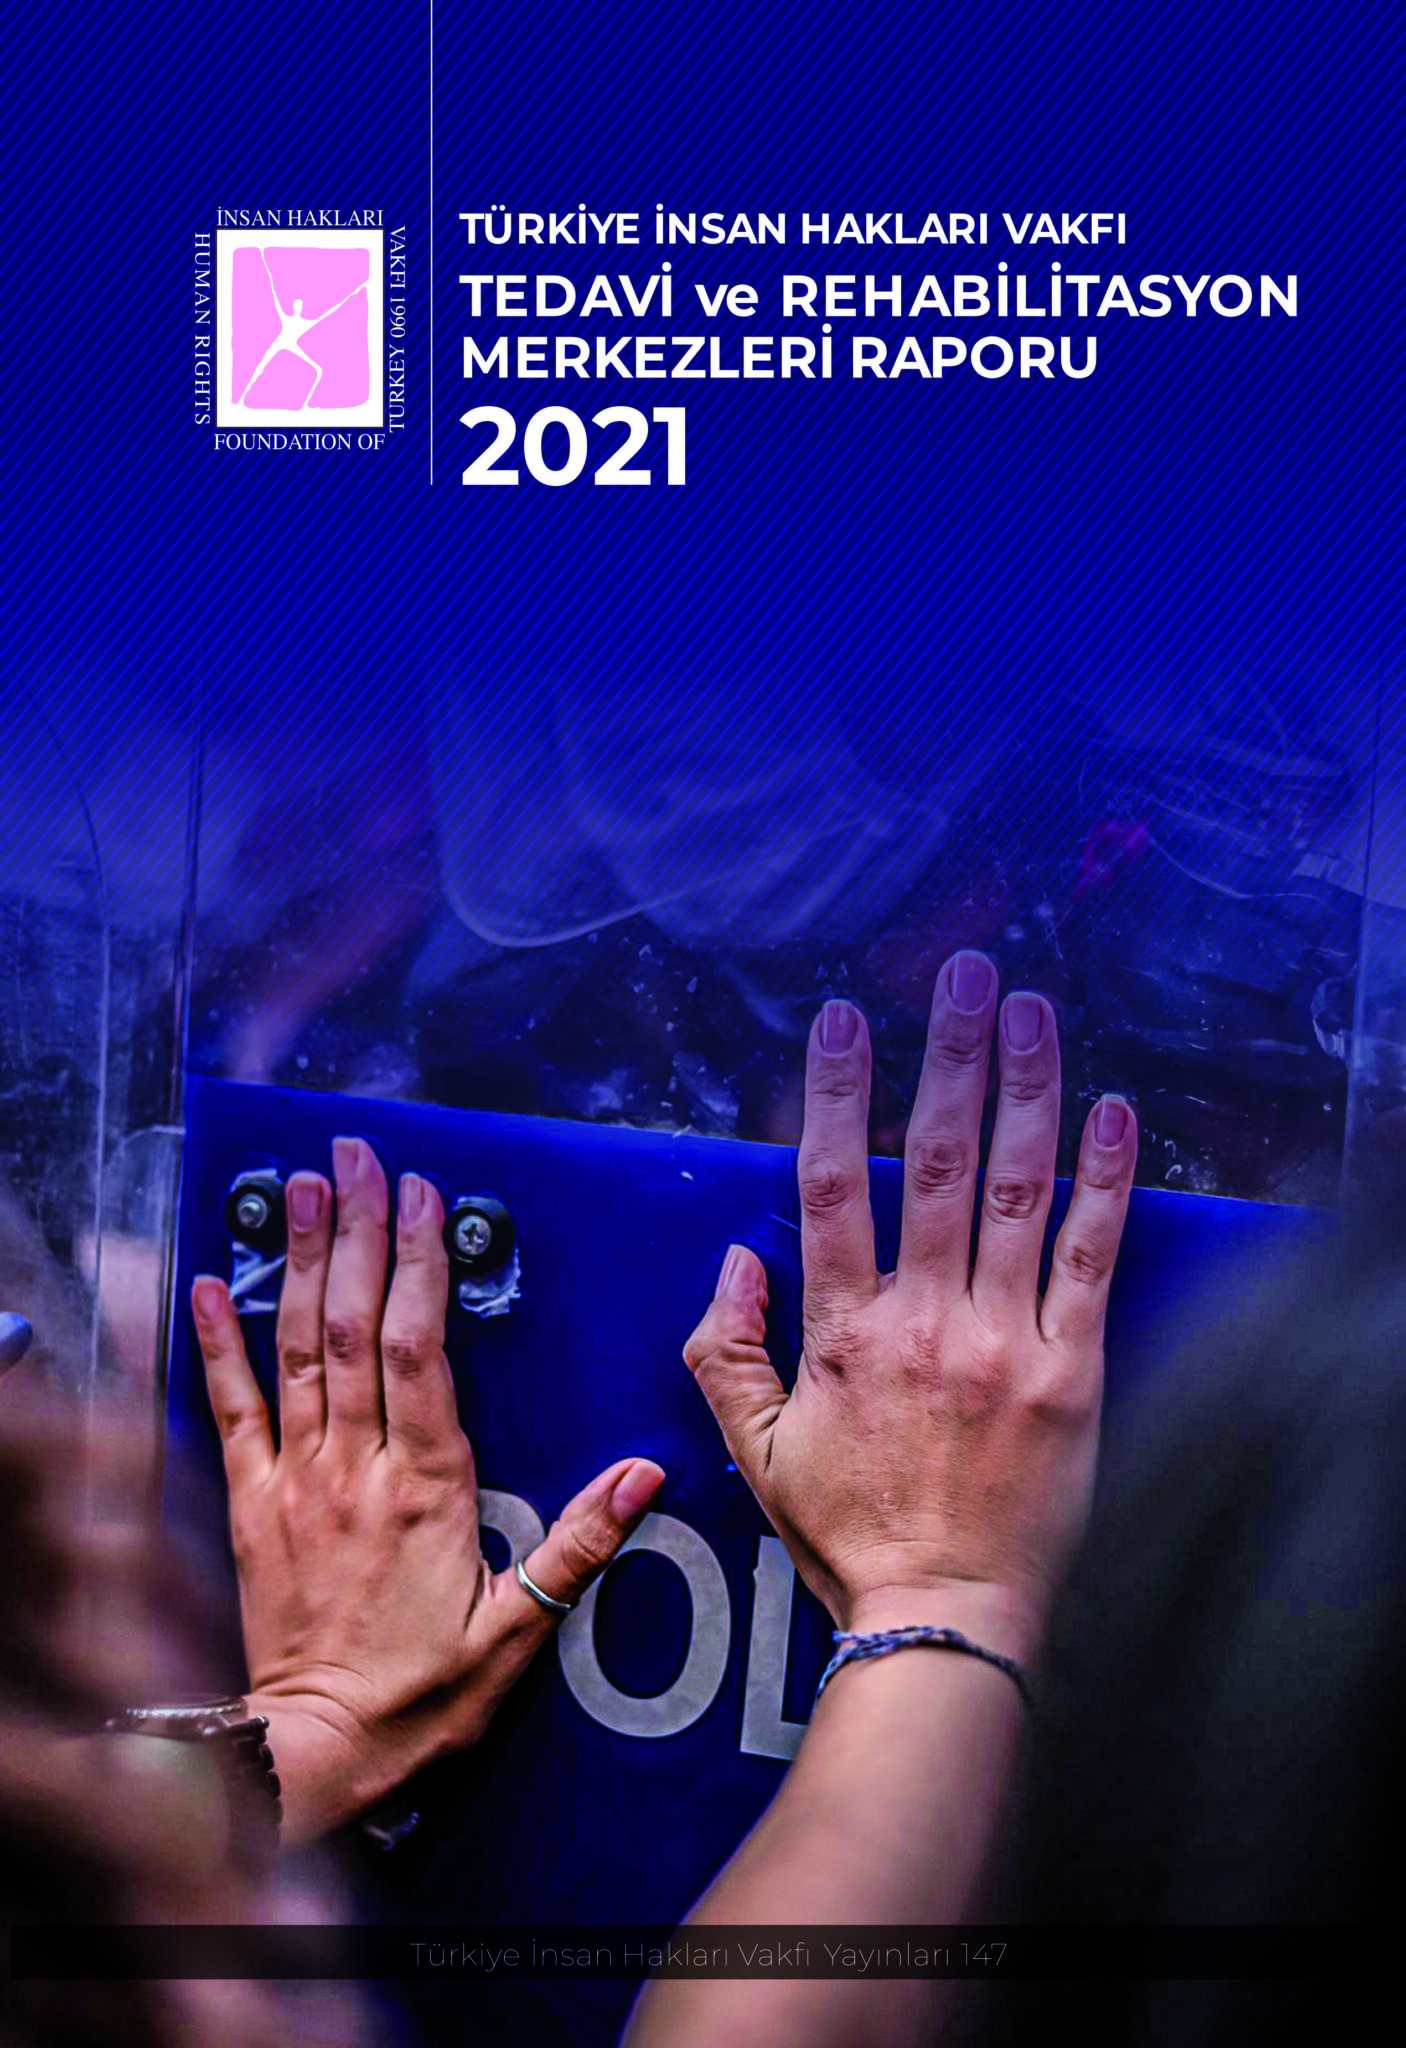 Türkiye İnsan Hakları Vakfı (TİHV) 2021 Yılı Tedavi ve Rehabilitasyon Merkezleri Raporu yayınlandı.